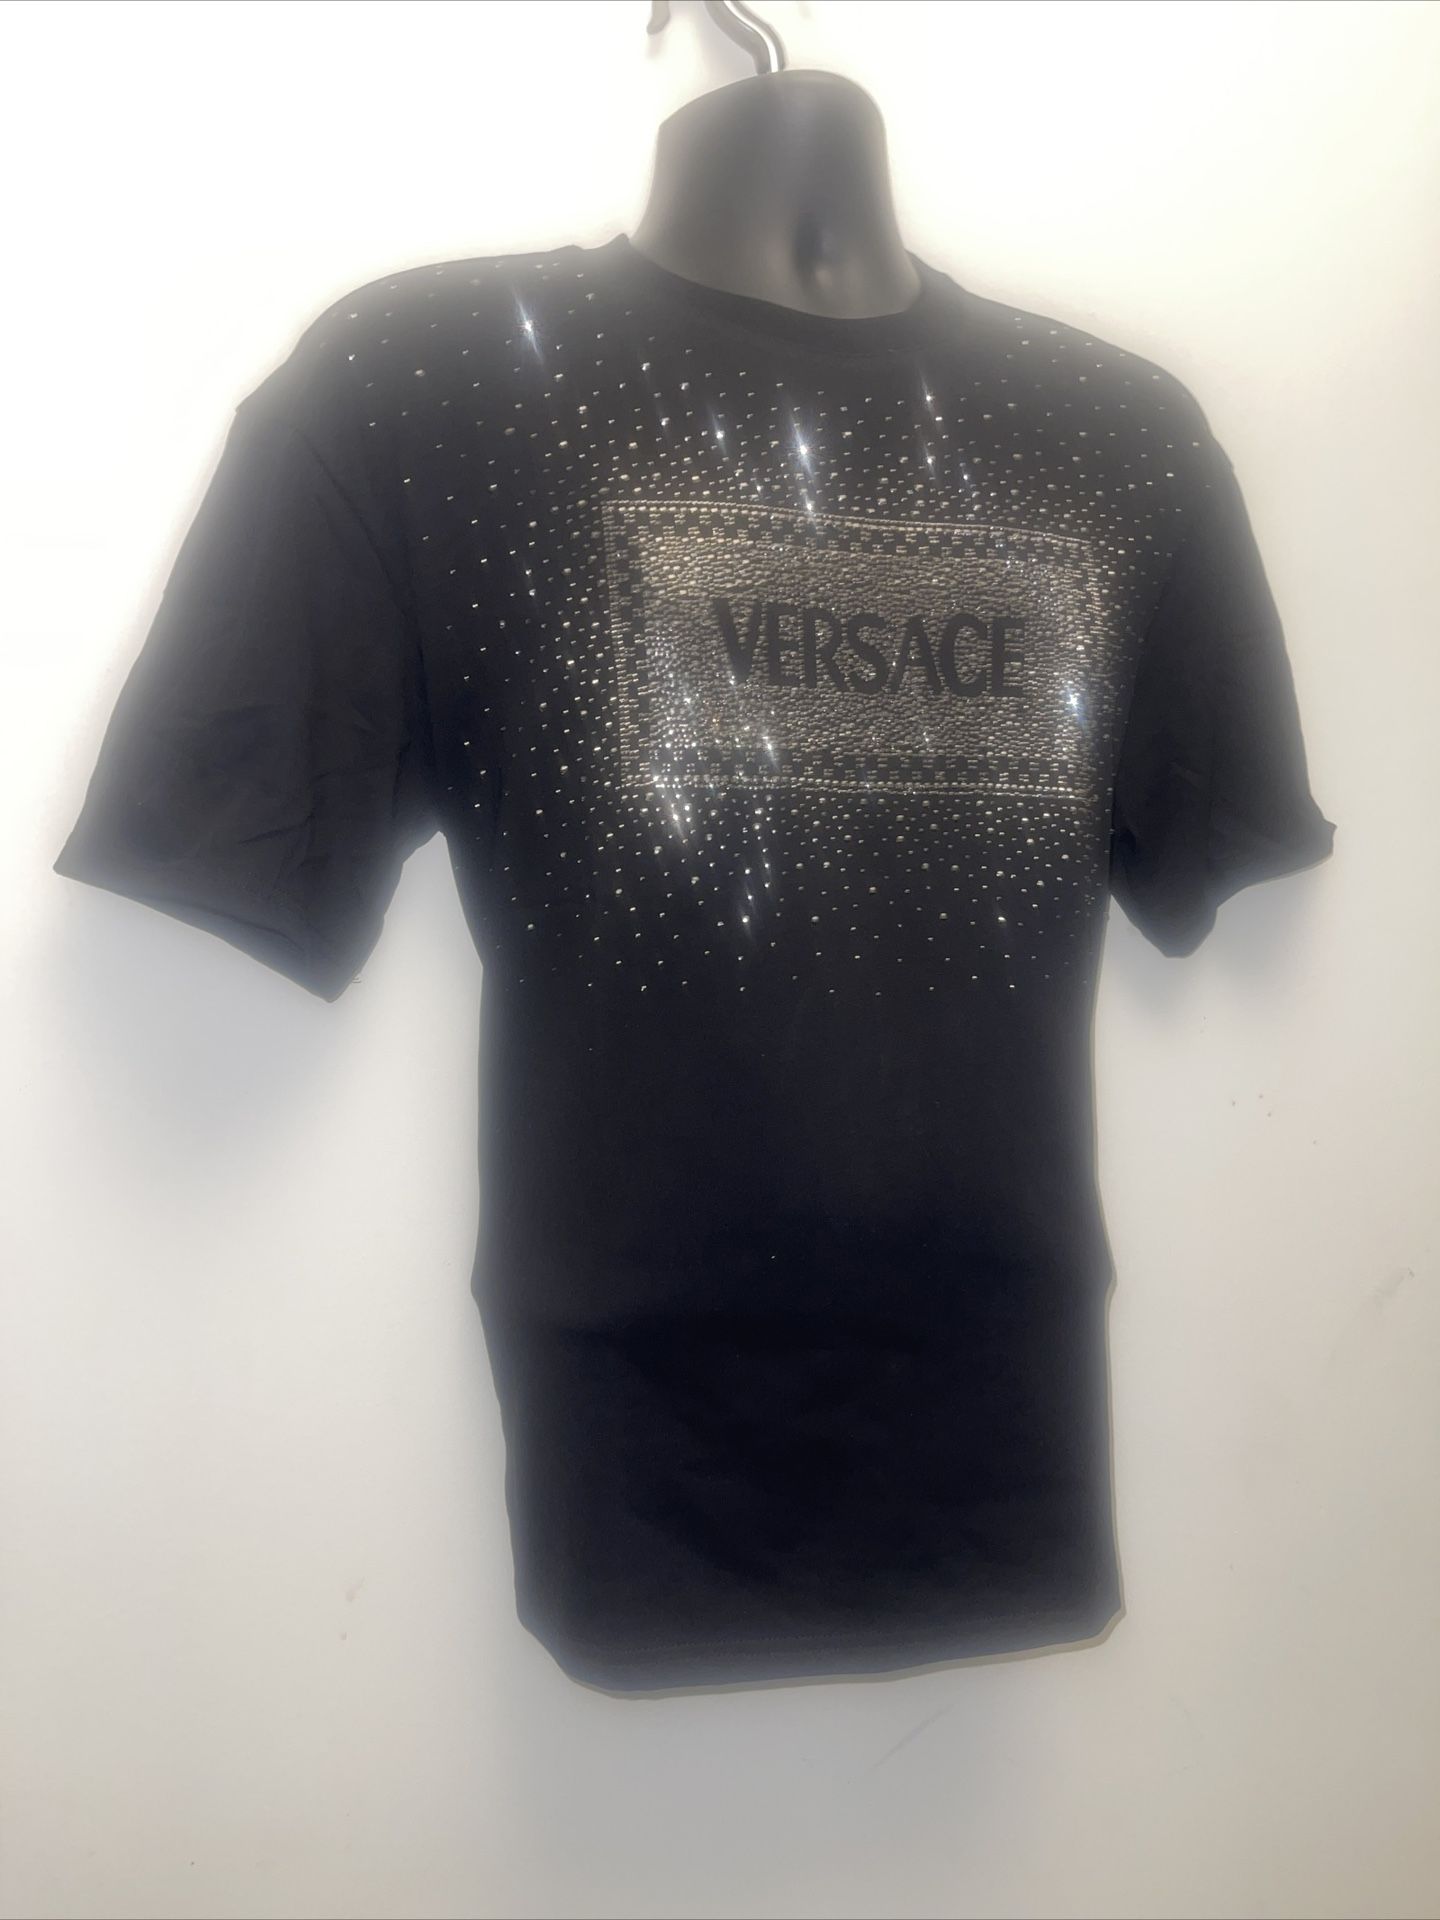 Versace T-shirt Size Xl 